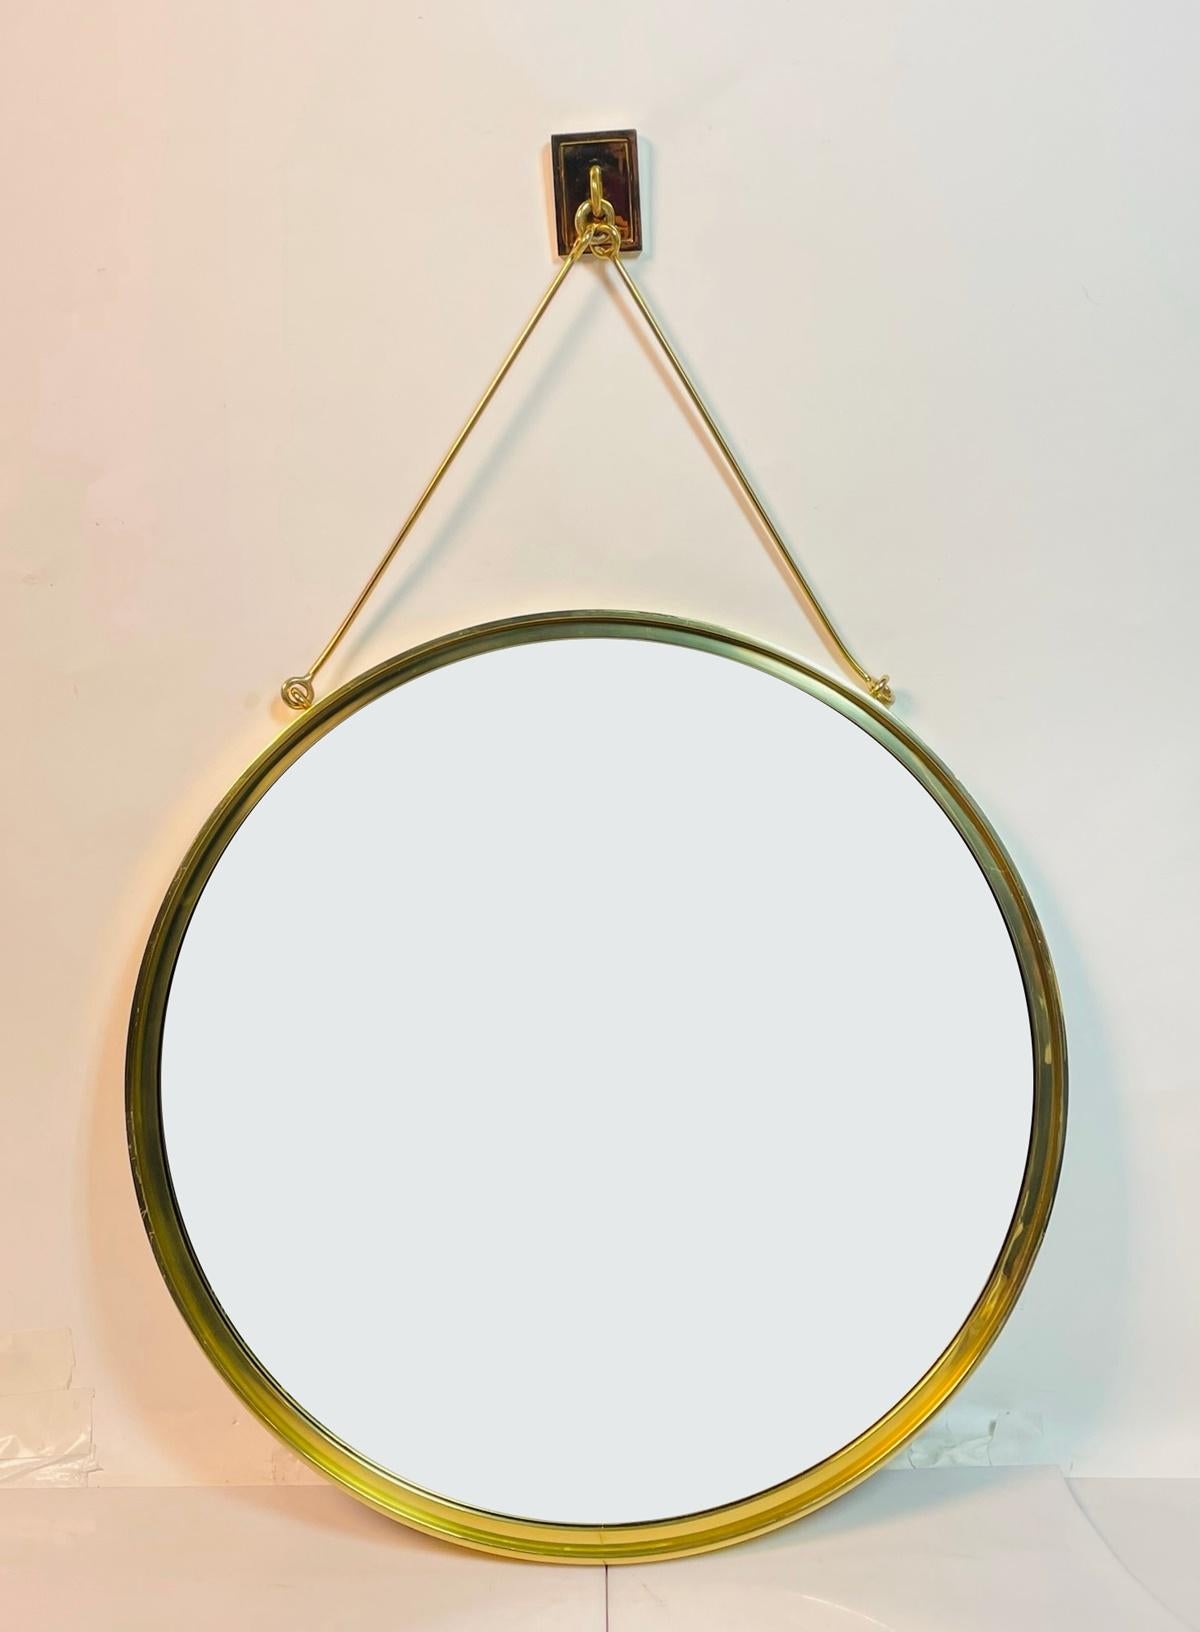 Ajoutez une touche d'élégance moderne à votre espace avec le miroir mural contemporain en laiton de Waterworks. Fabriqué en laiton de haute qualité, ce superbe miroir rond présente une finition dorée élégante qui exsude la sophistication. Les